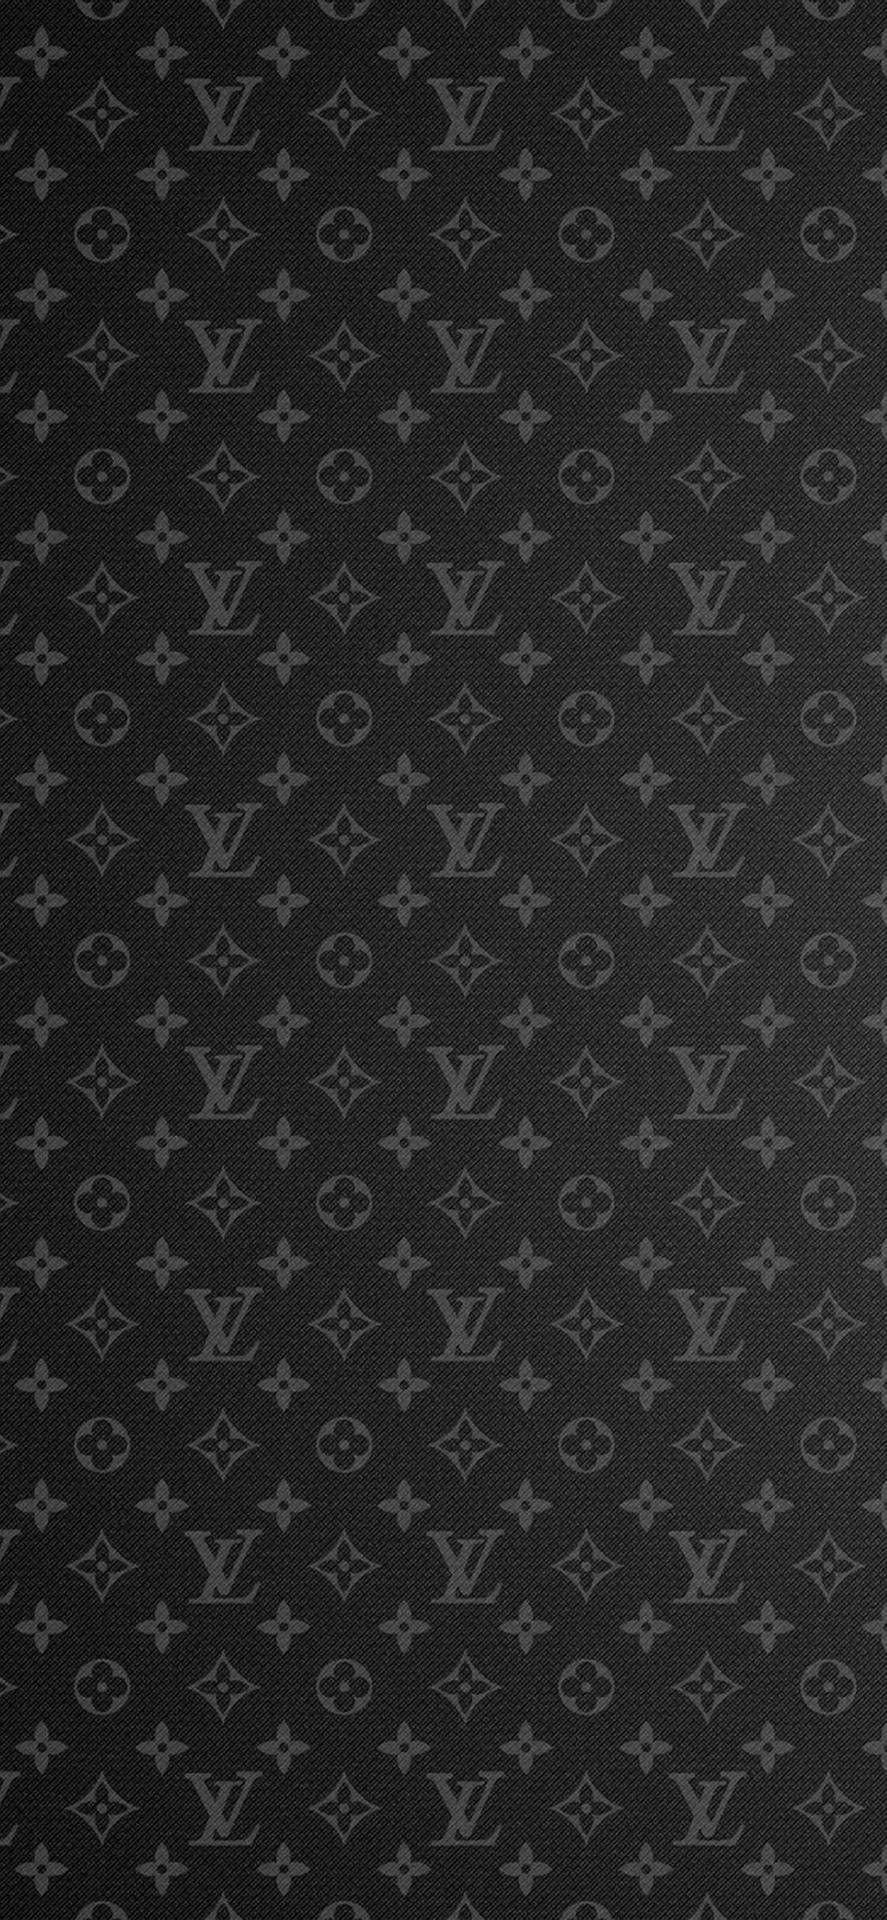 Luis Vuitton  Louis vuitton pattern, Louis vuitton iphone wallpaper, Cute  patterns wallpaper